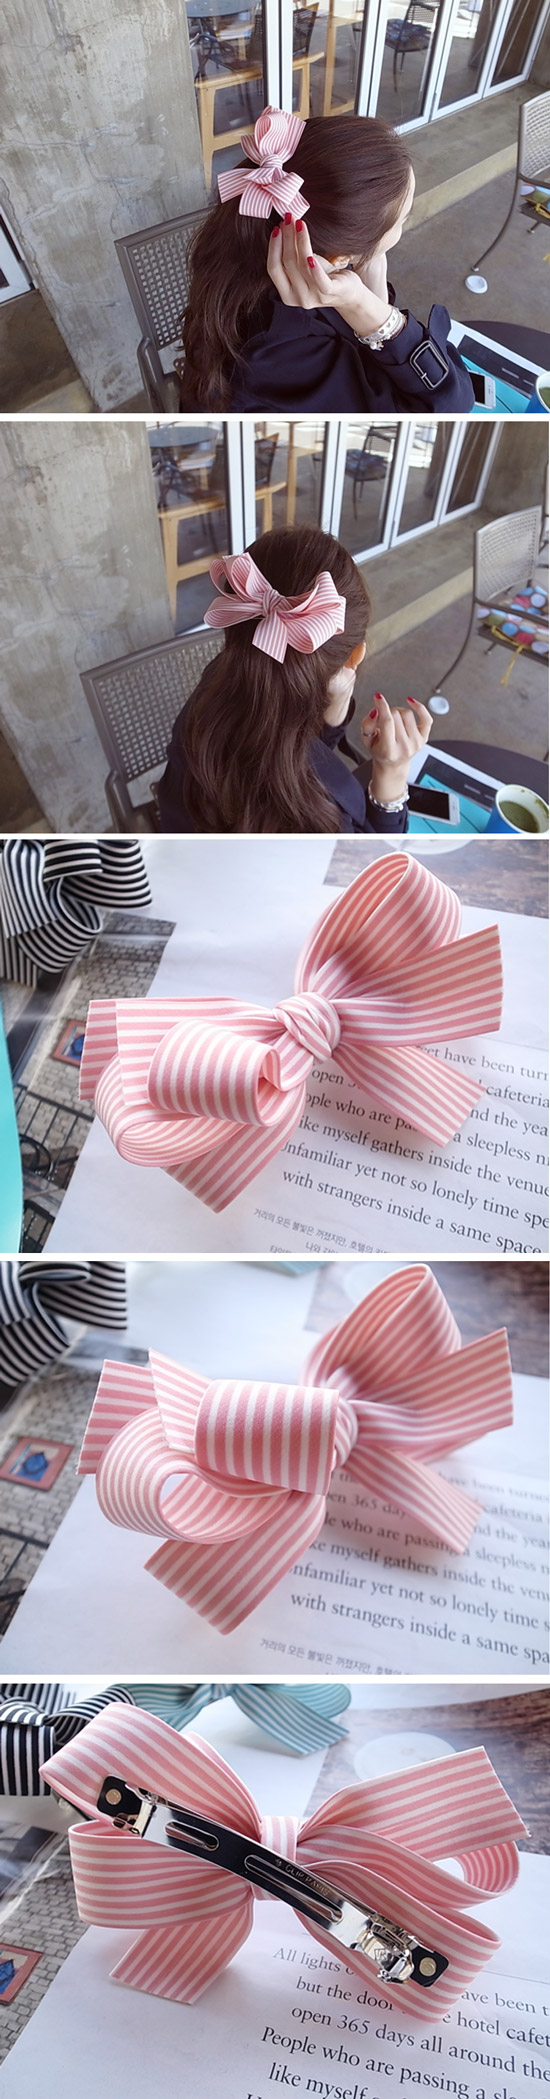 韓國 NaniWorld 小清新條紋蝴蝶結髮夾 #3585 粉紅色